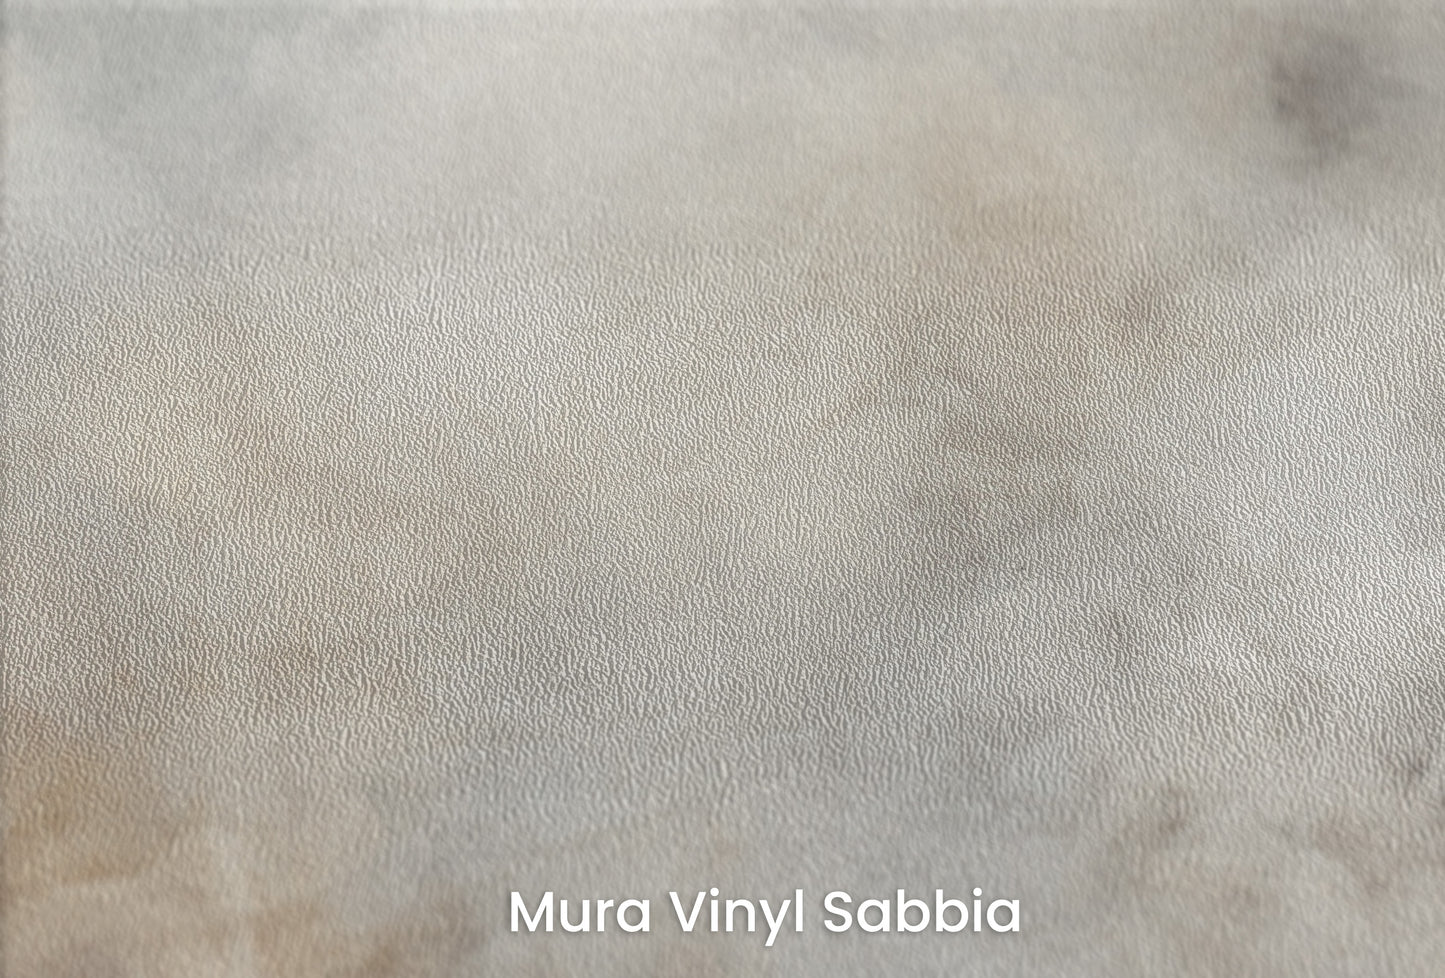 Zbliżenie na artystyczną fototapetę o nazwie CELESTIAL MIST na podłożu Mura Vinyl Sabbia struktura grubego ziarna piasku.